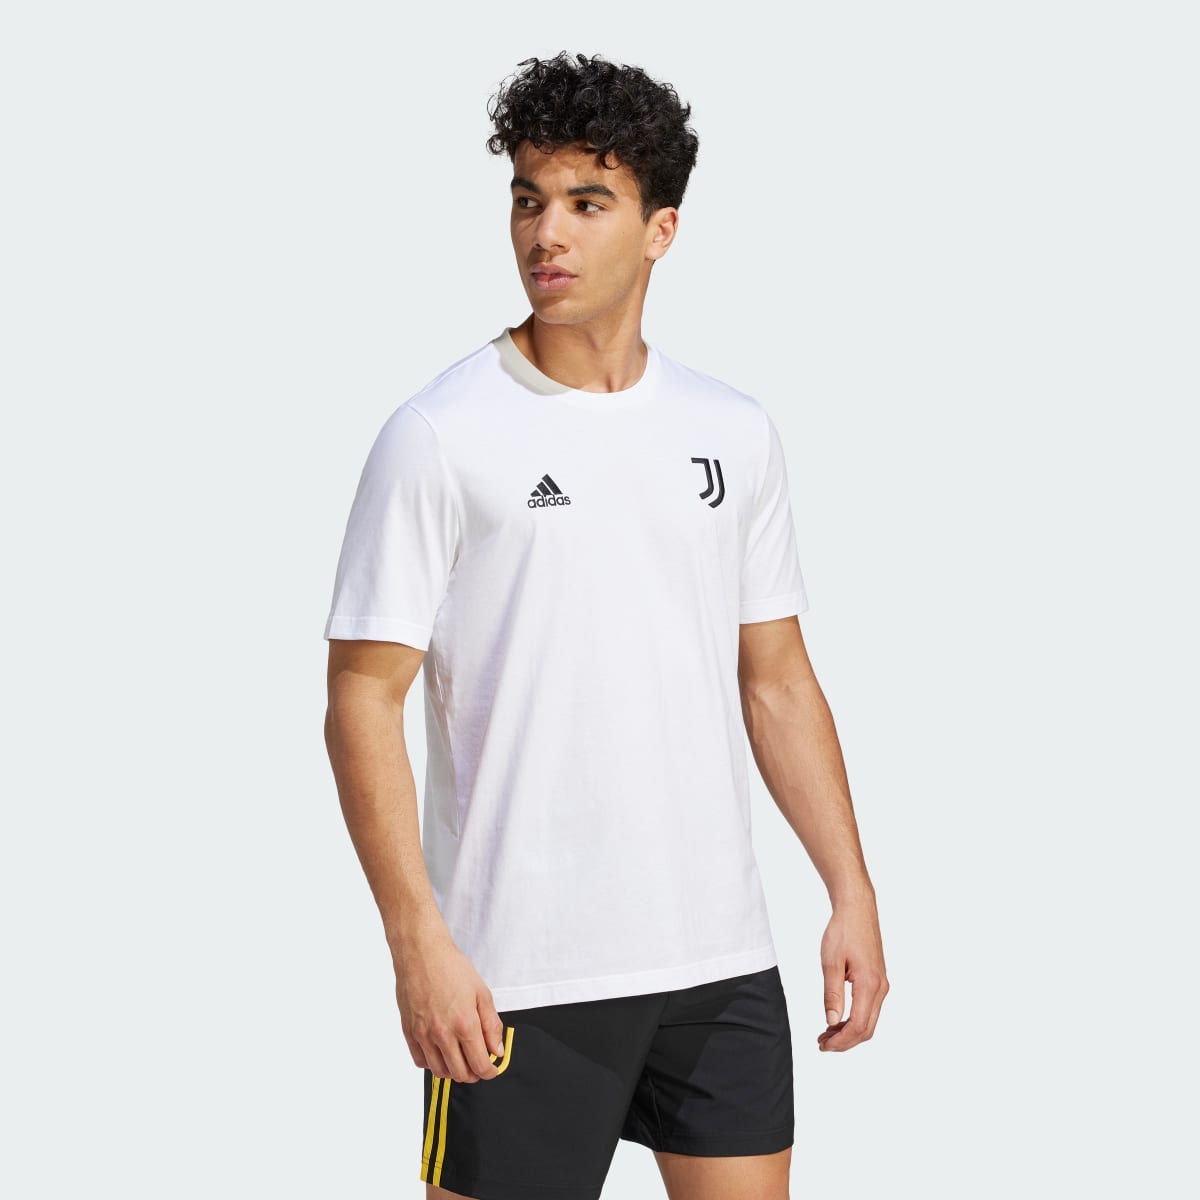 Adidas T-shirt DNA da Juventus. 4